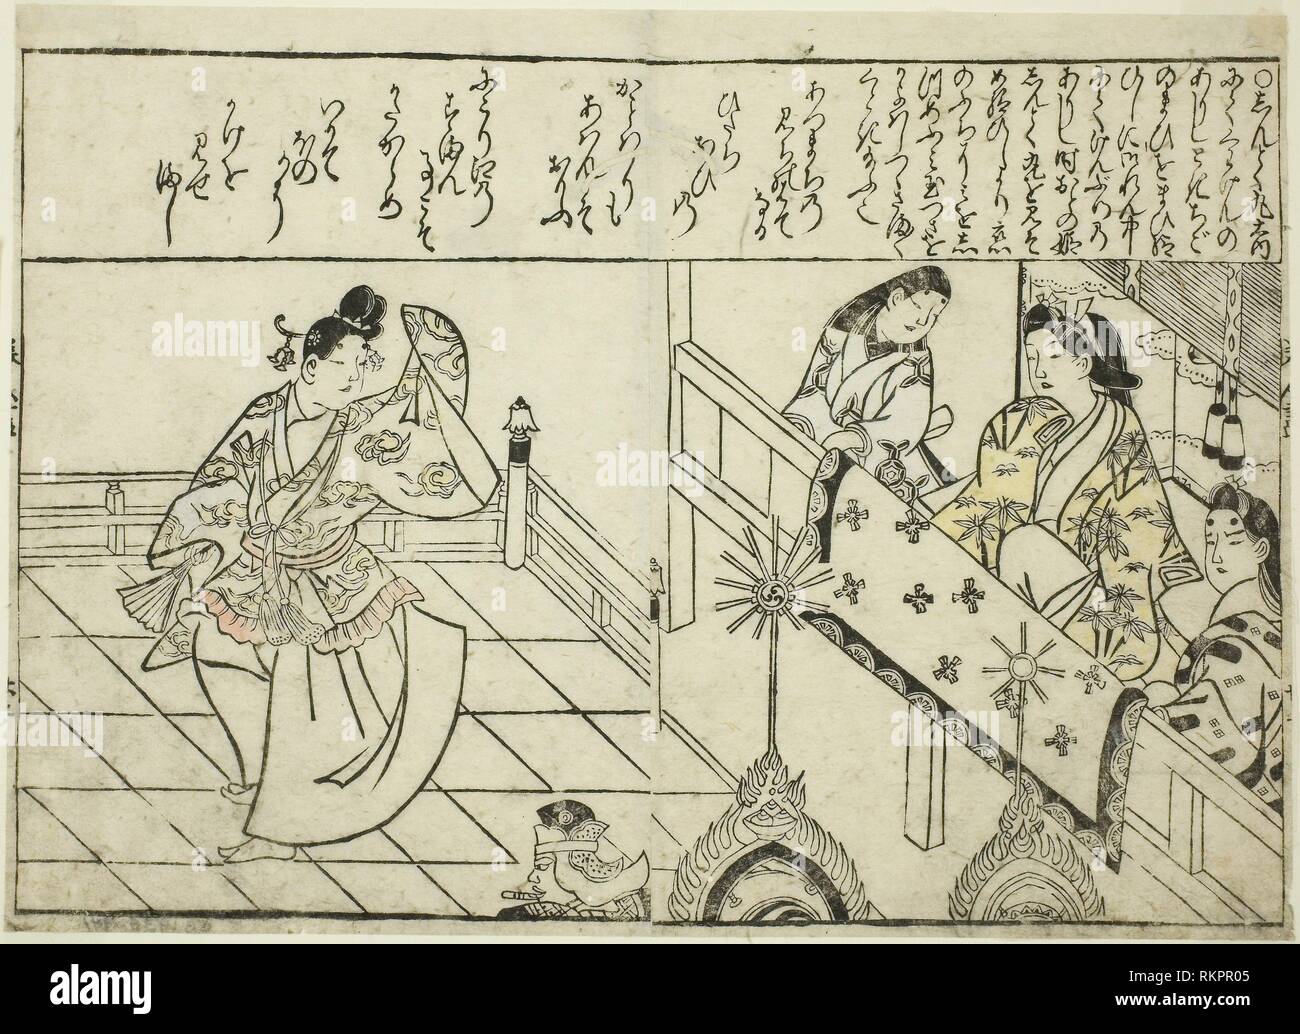 Baile Shintokumaru antes del Oto Hime, desde el libro ilustrado ''Colección de fotos de bellezas (Bijin e-zukushi)'' - c. 1683 - Hishikawa Foto de stock